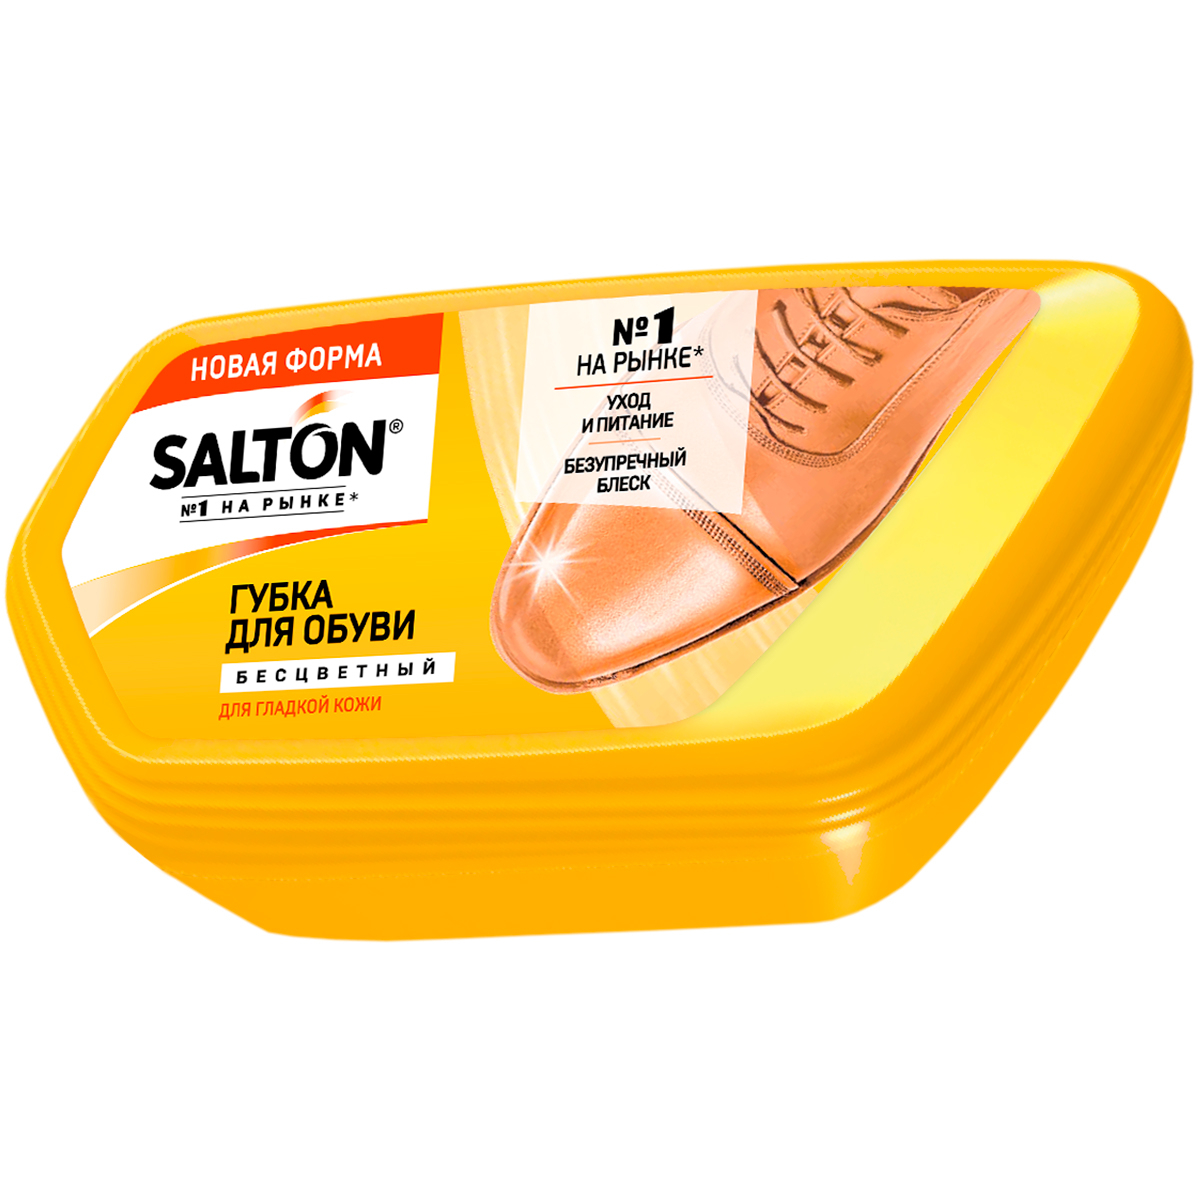 Губка-волна Salton для обуви из гладкой кожи, бесцветная salton губка волна для обуви из гладкой кожи черный дизайн 2017